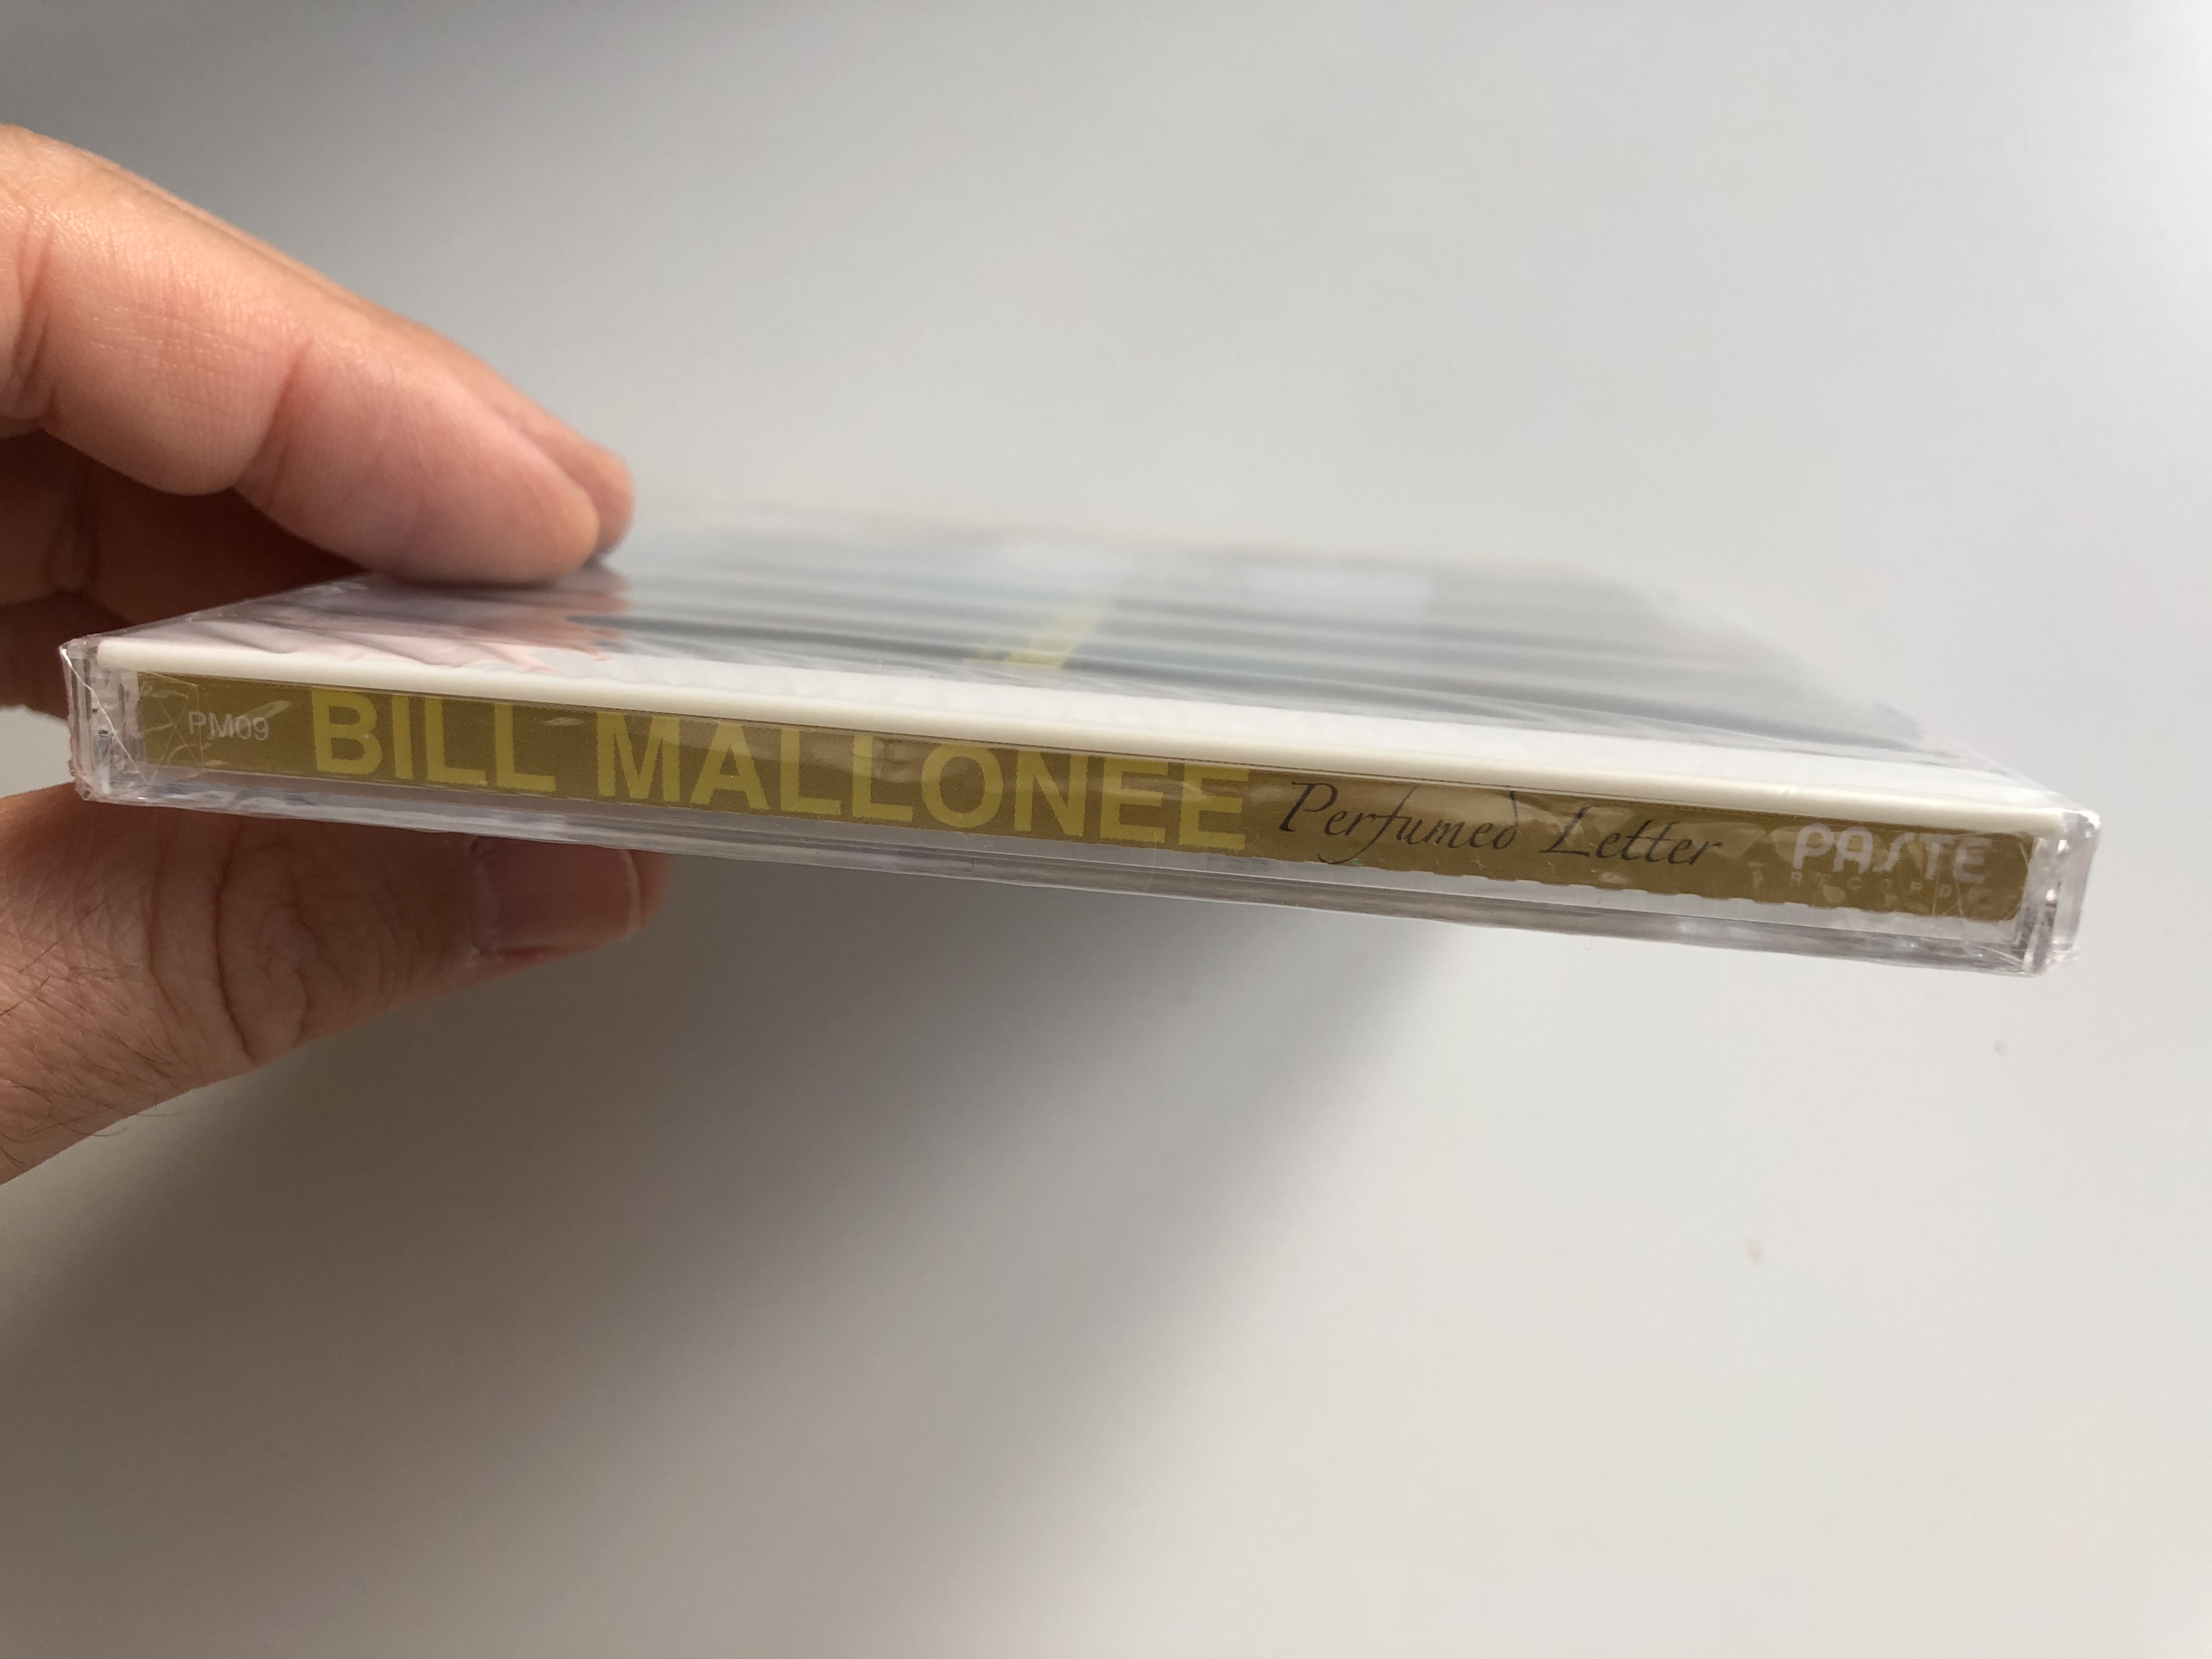 bill-mallonee-perfumed-letter-paste-music-audio-cd-2003-pm09-3-.jpg